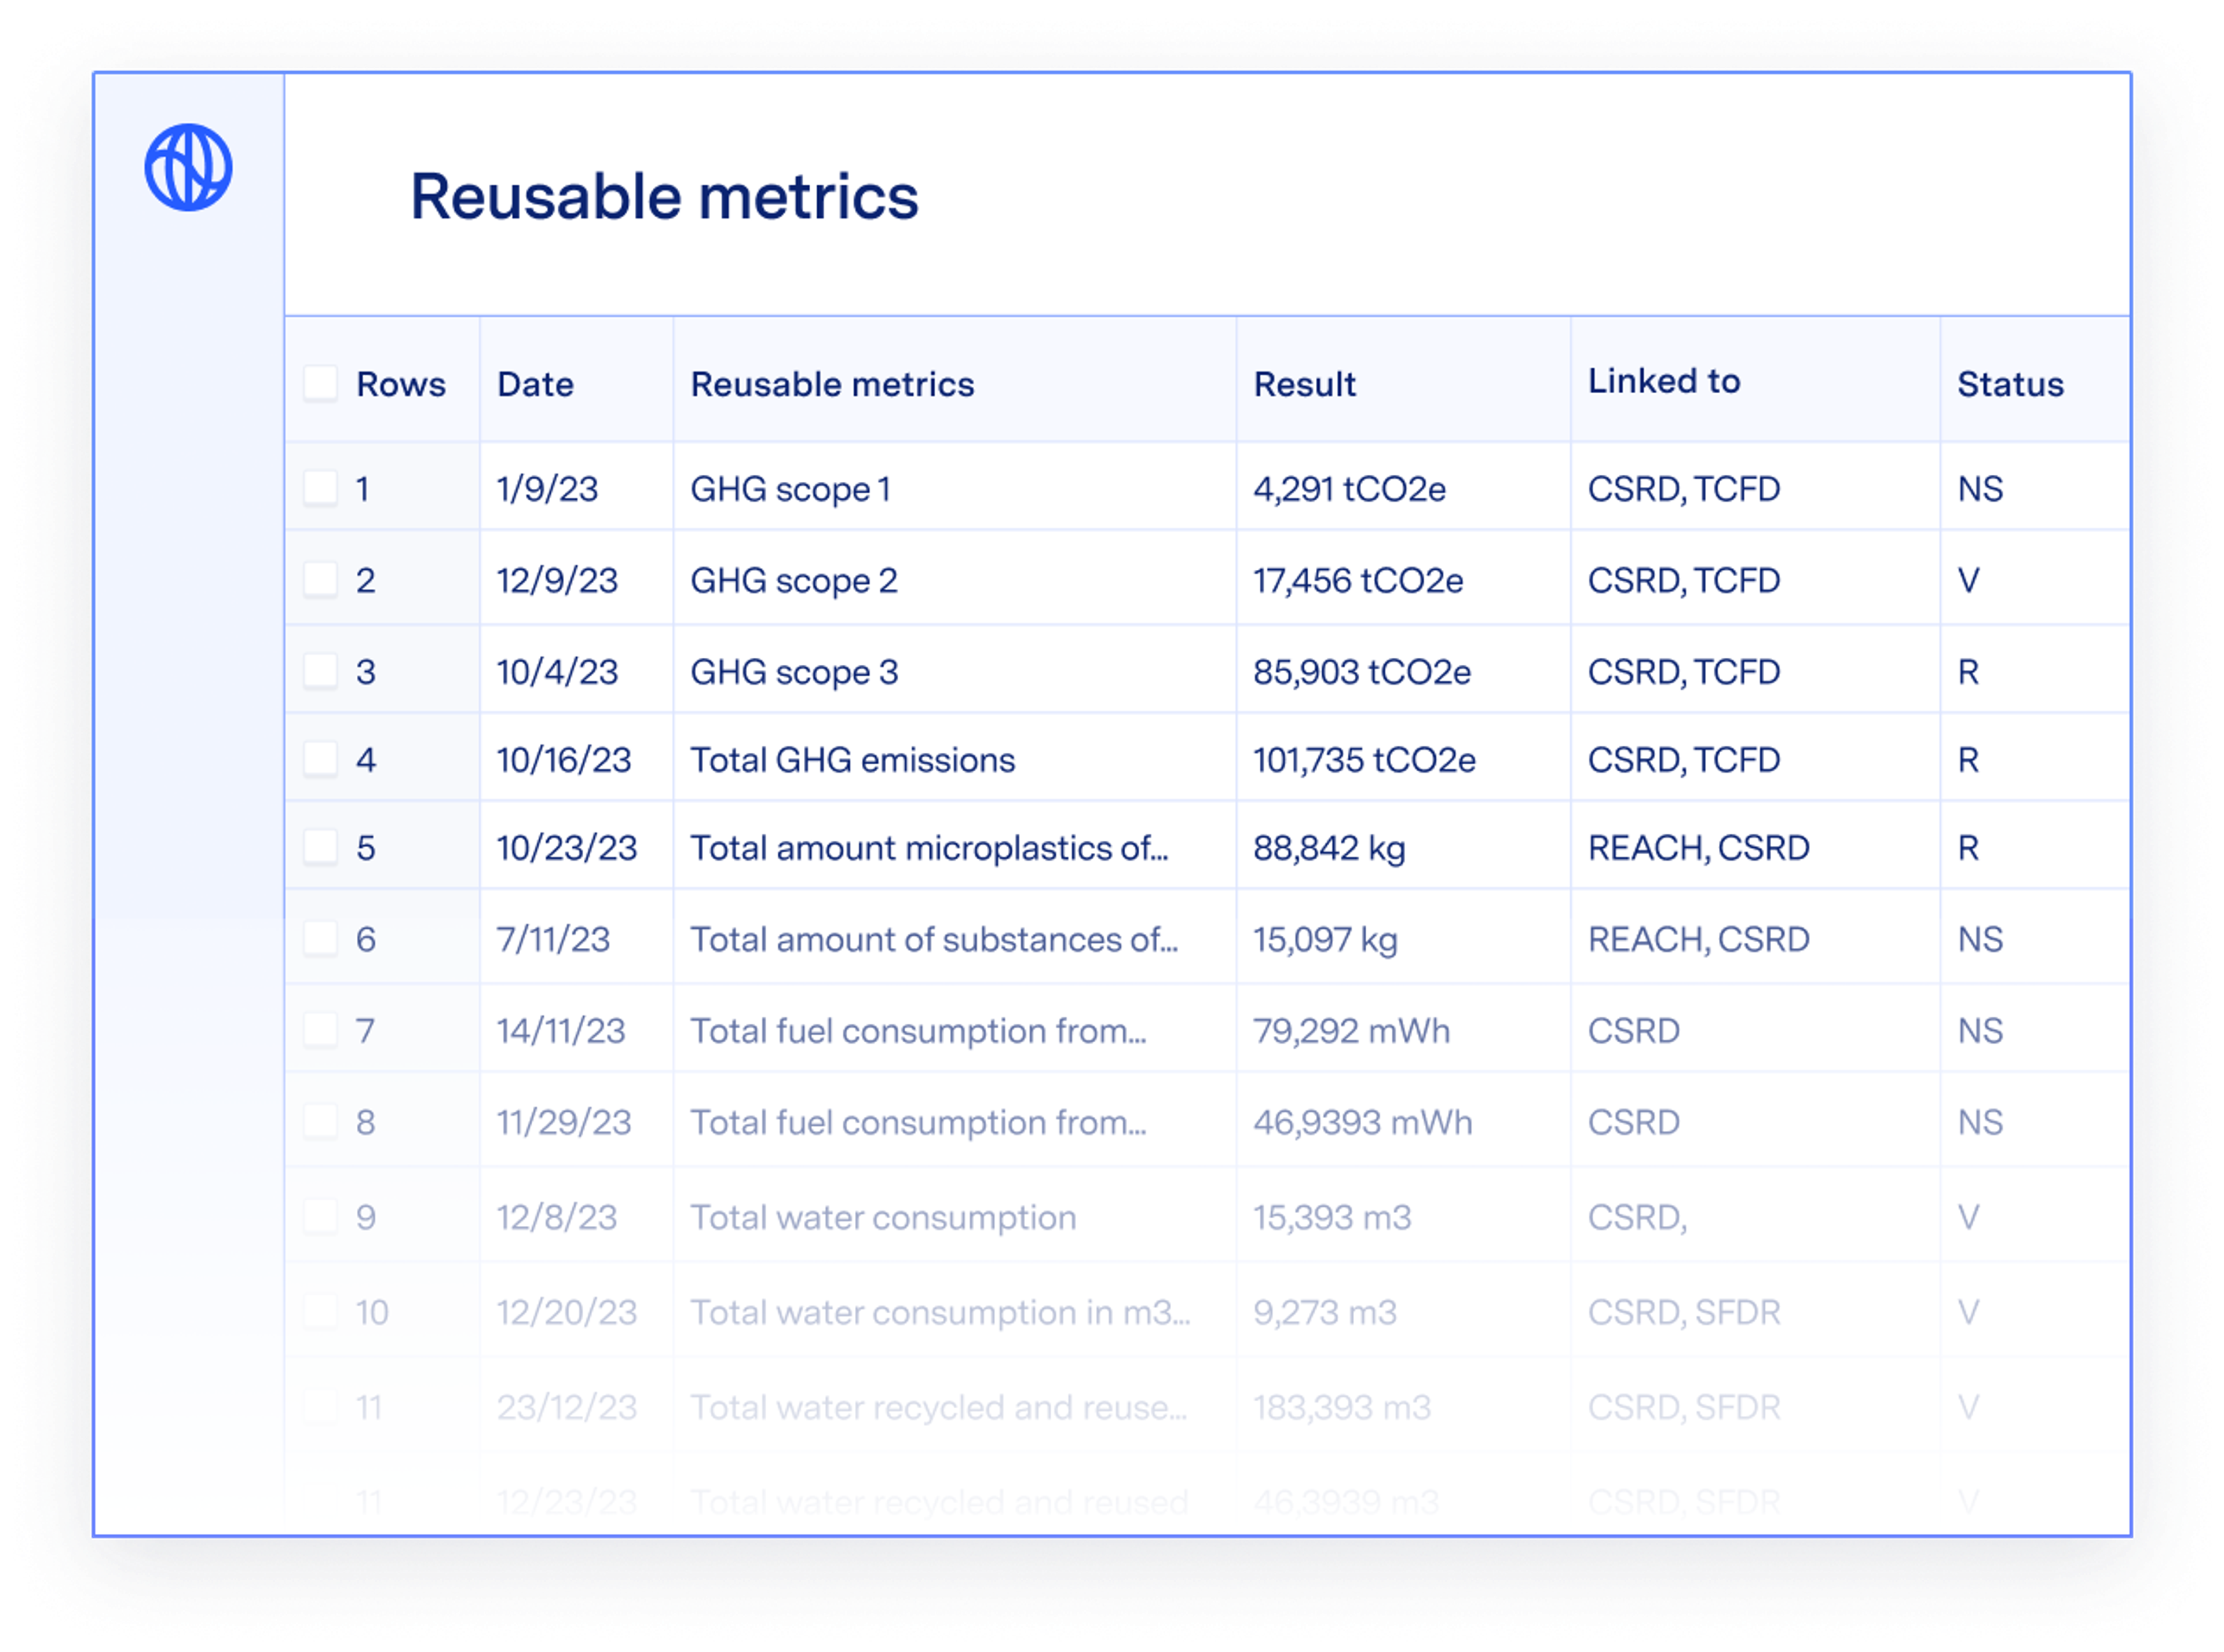 Reusable metrics data sheet